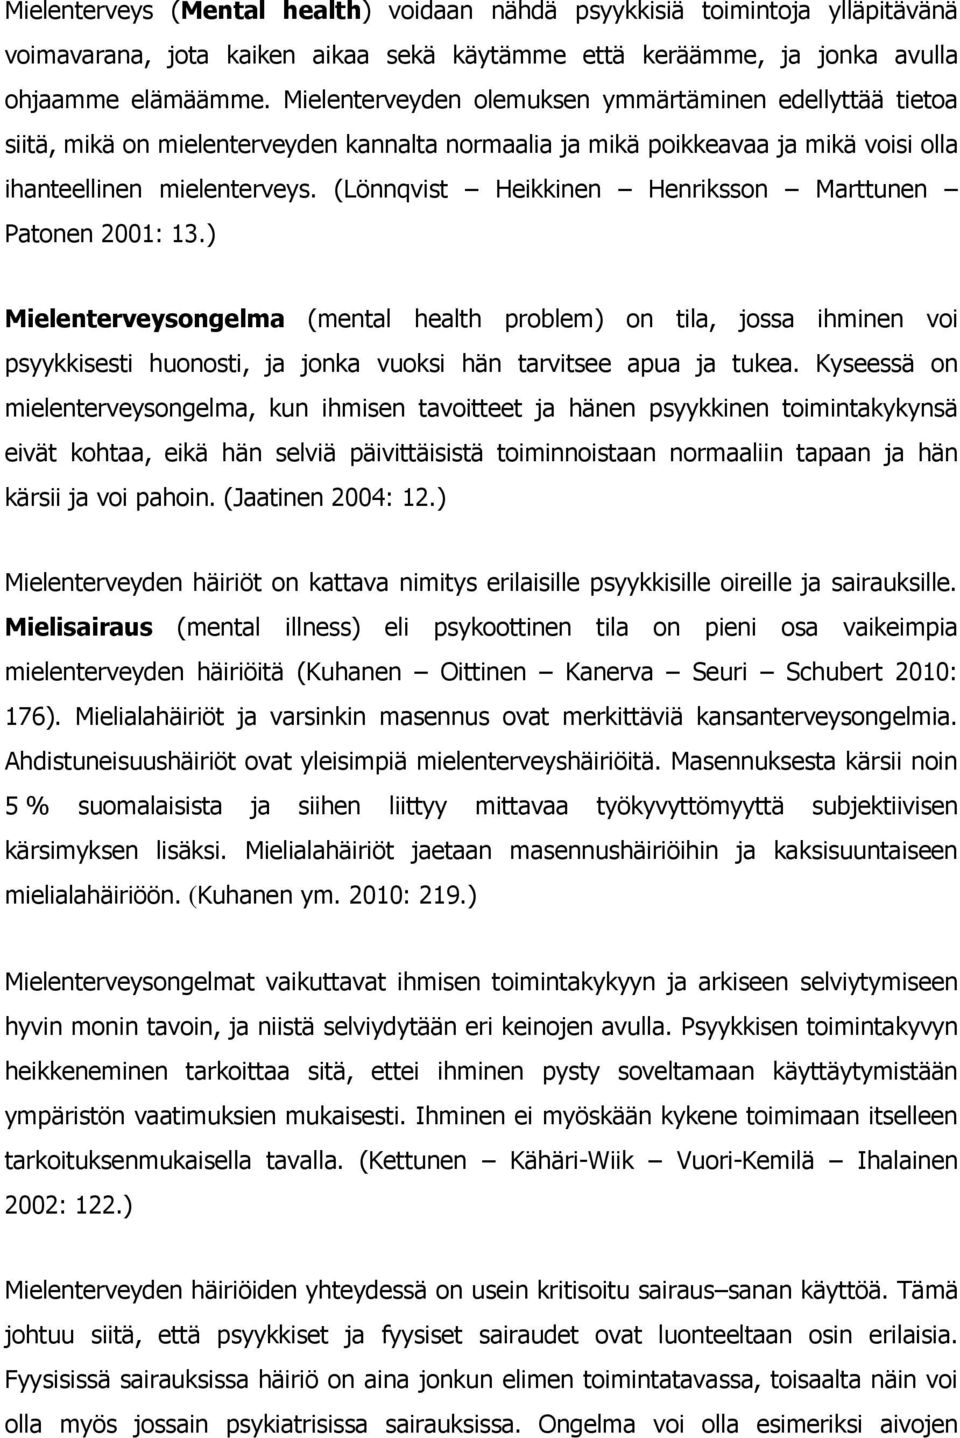 (Lönnqvist Heikkinen Henriksson Marttunen Patonen 2001: 13.) Mielenterveysongelma (mental health problem) on tila, jossa ihminen voi psyykkisesti huonosti, ja jonka vuoksi hän tarvitsee apua ja tukea.